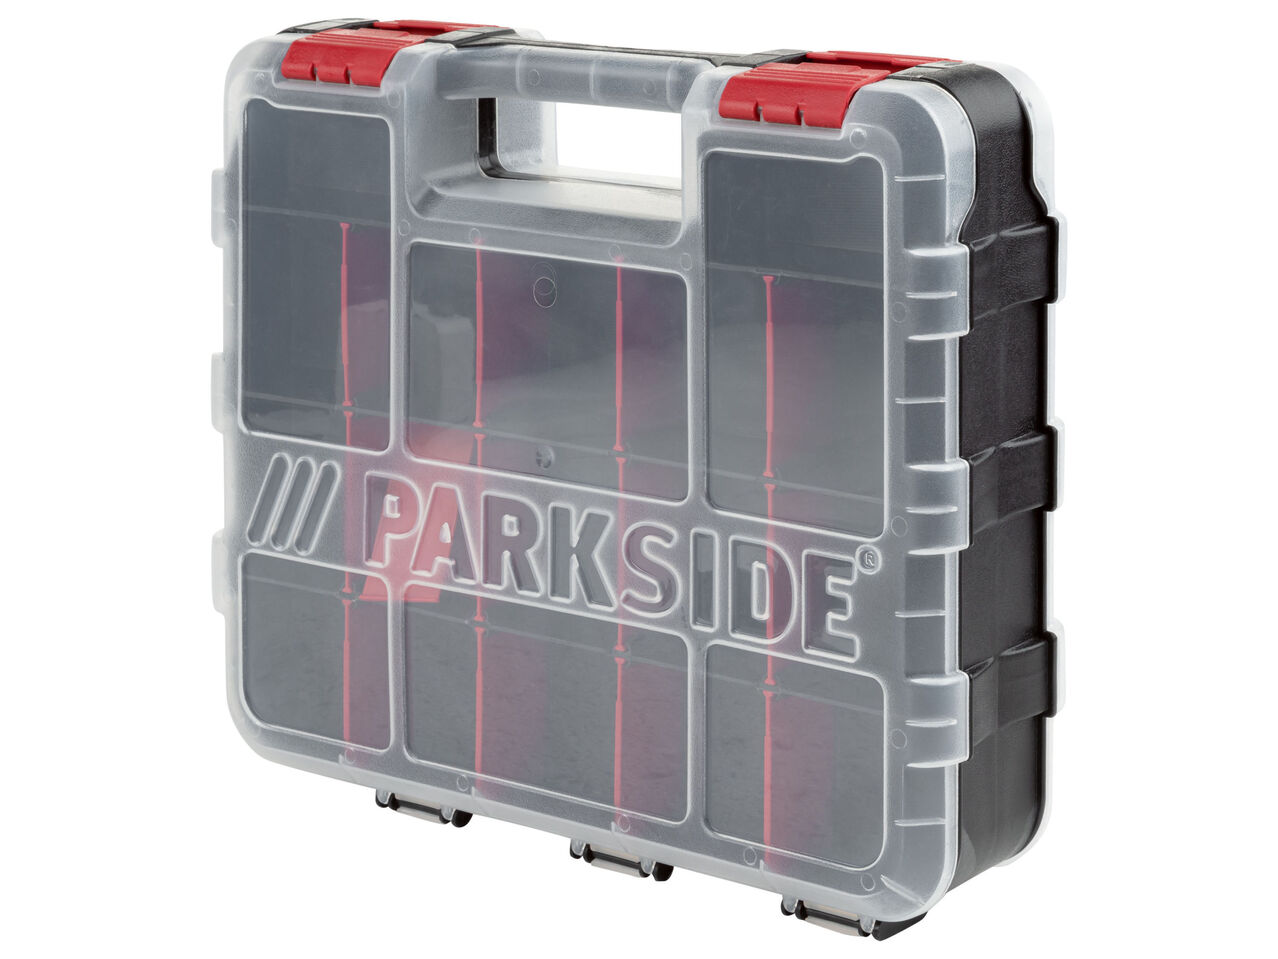 PARKSIDE® Dwustronna walizka na akcesoria warsztatowe , cena 29,99 PLN 
 
- ...